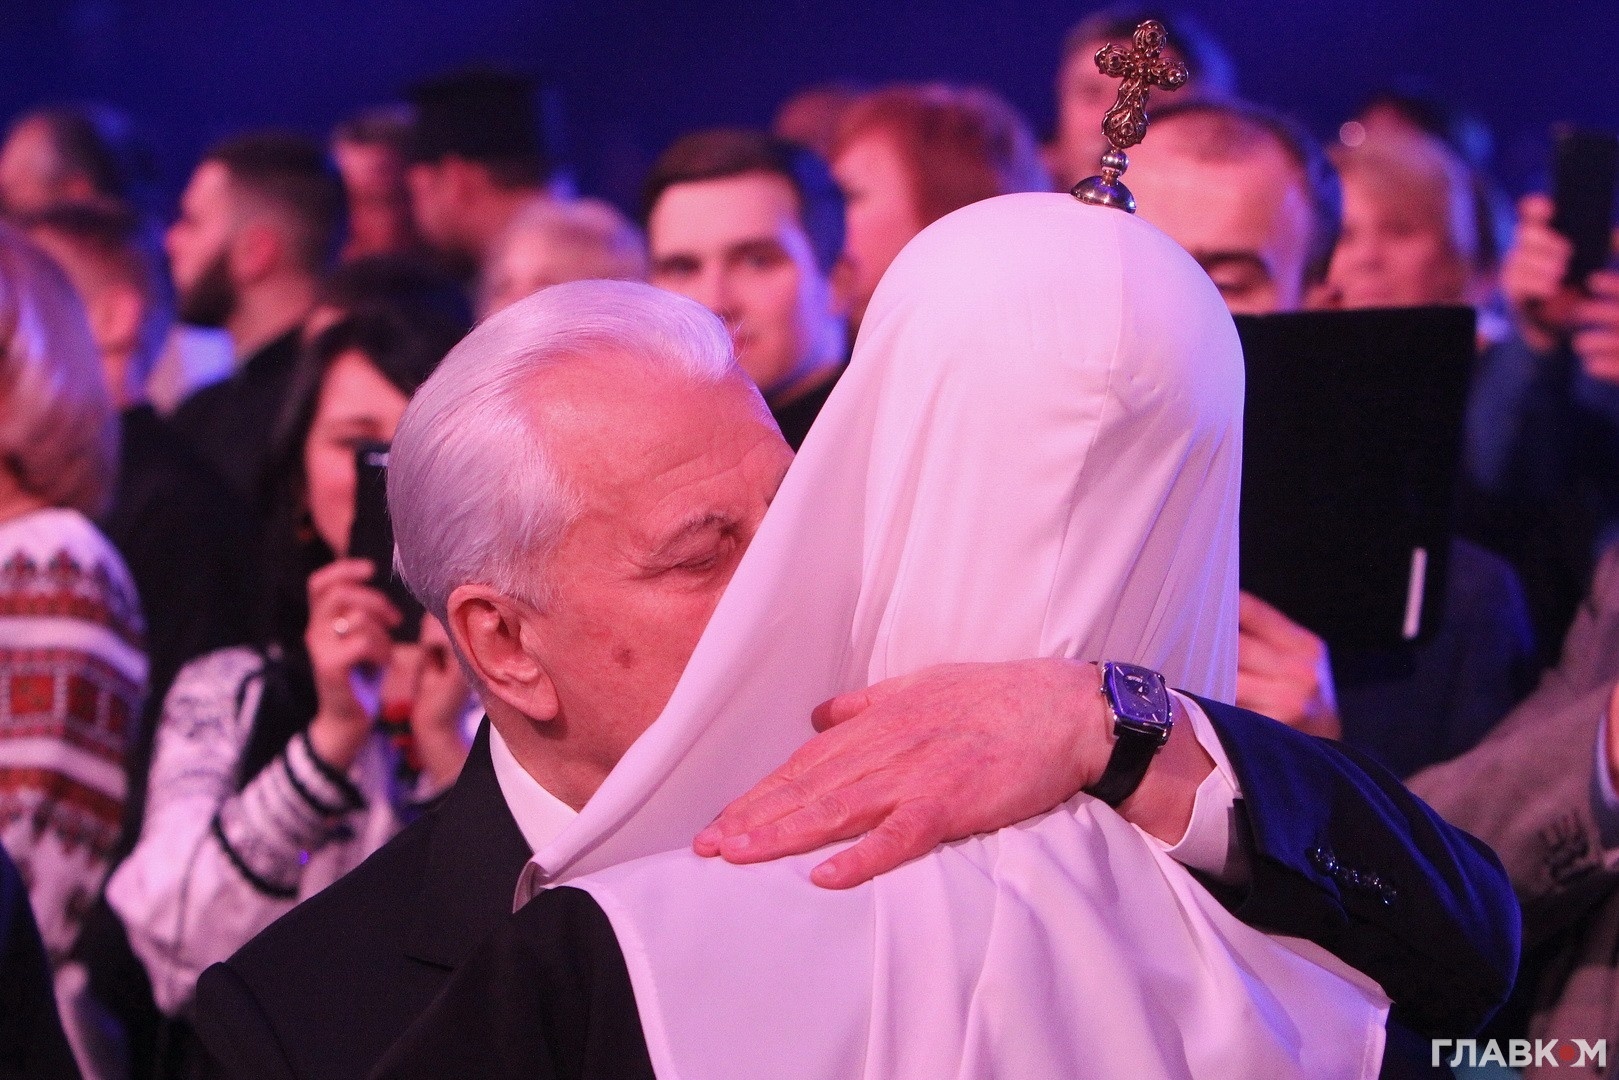 Леонід Кравчук обіймає патріарха Філарета. Святкування 90-річчя патріарха, січень 2019 року